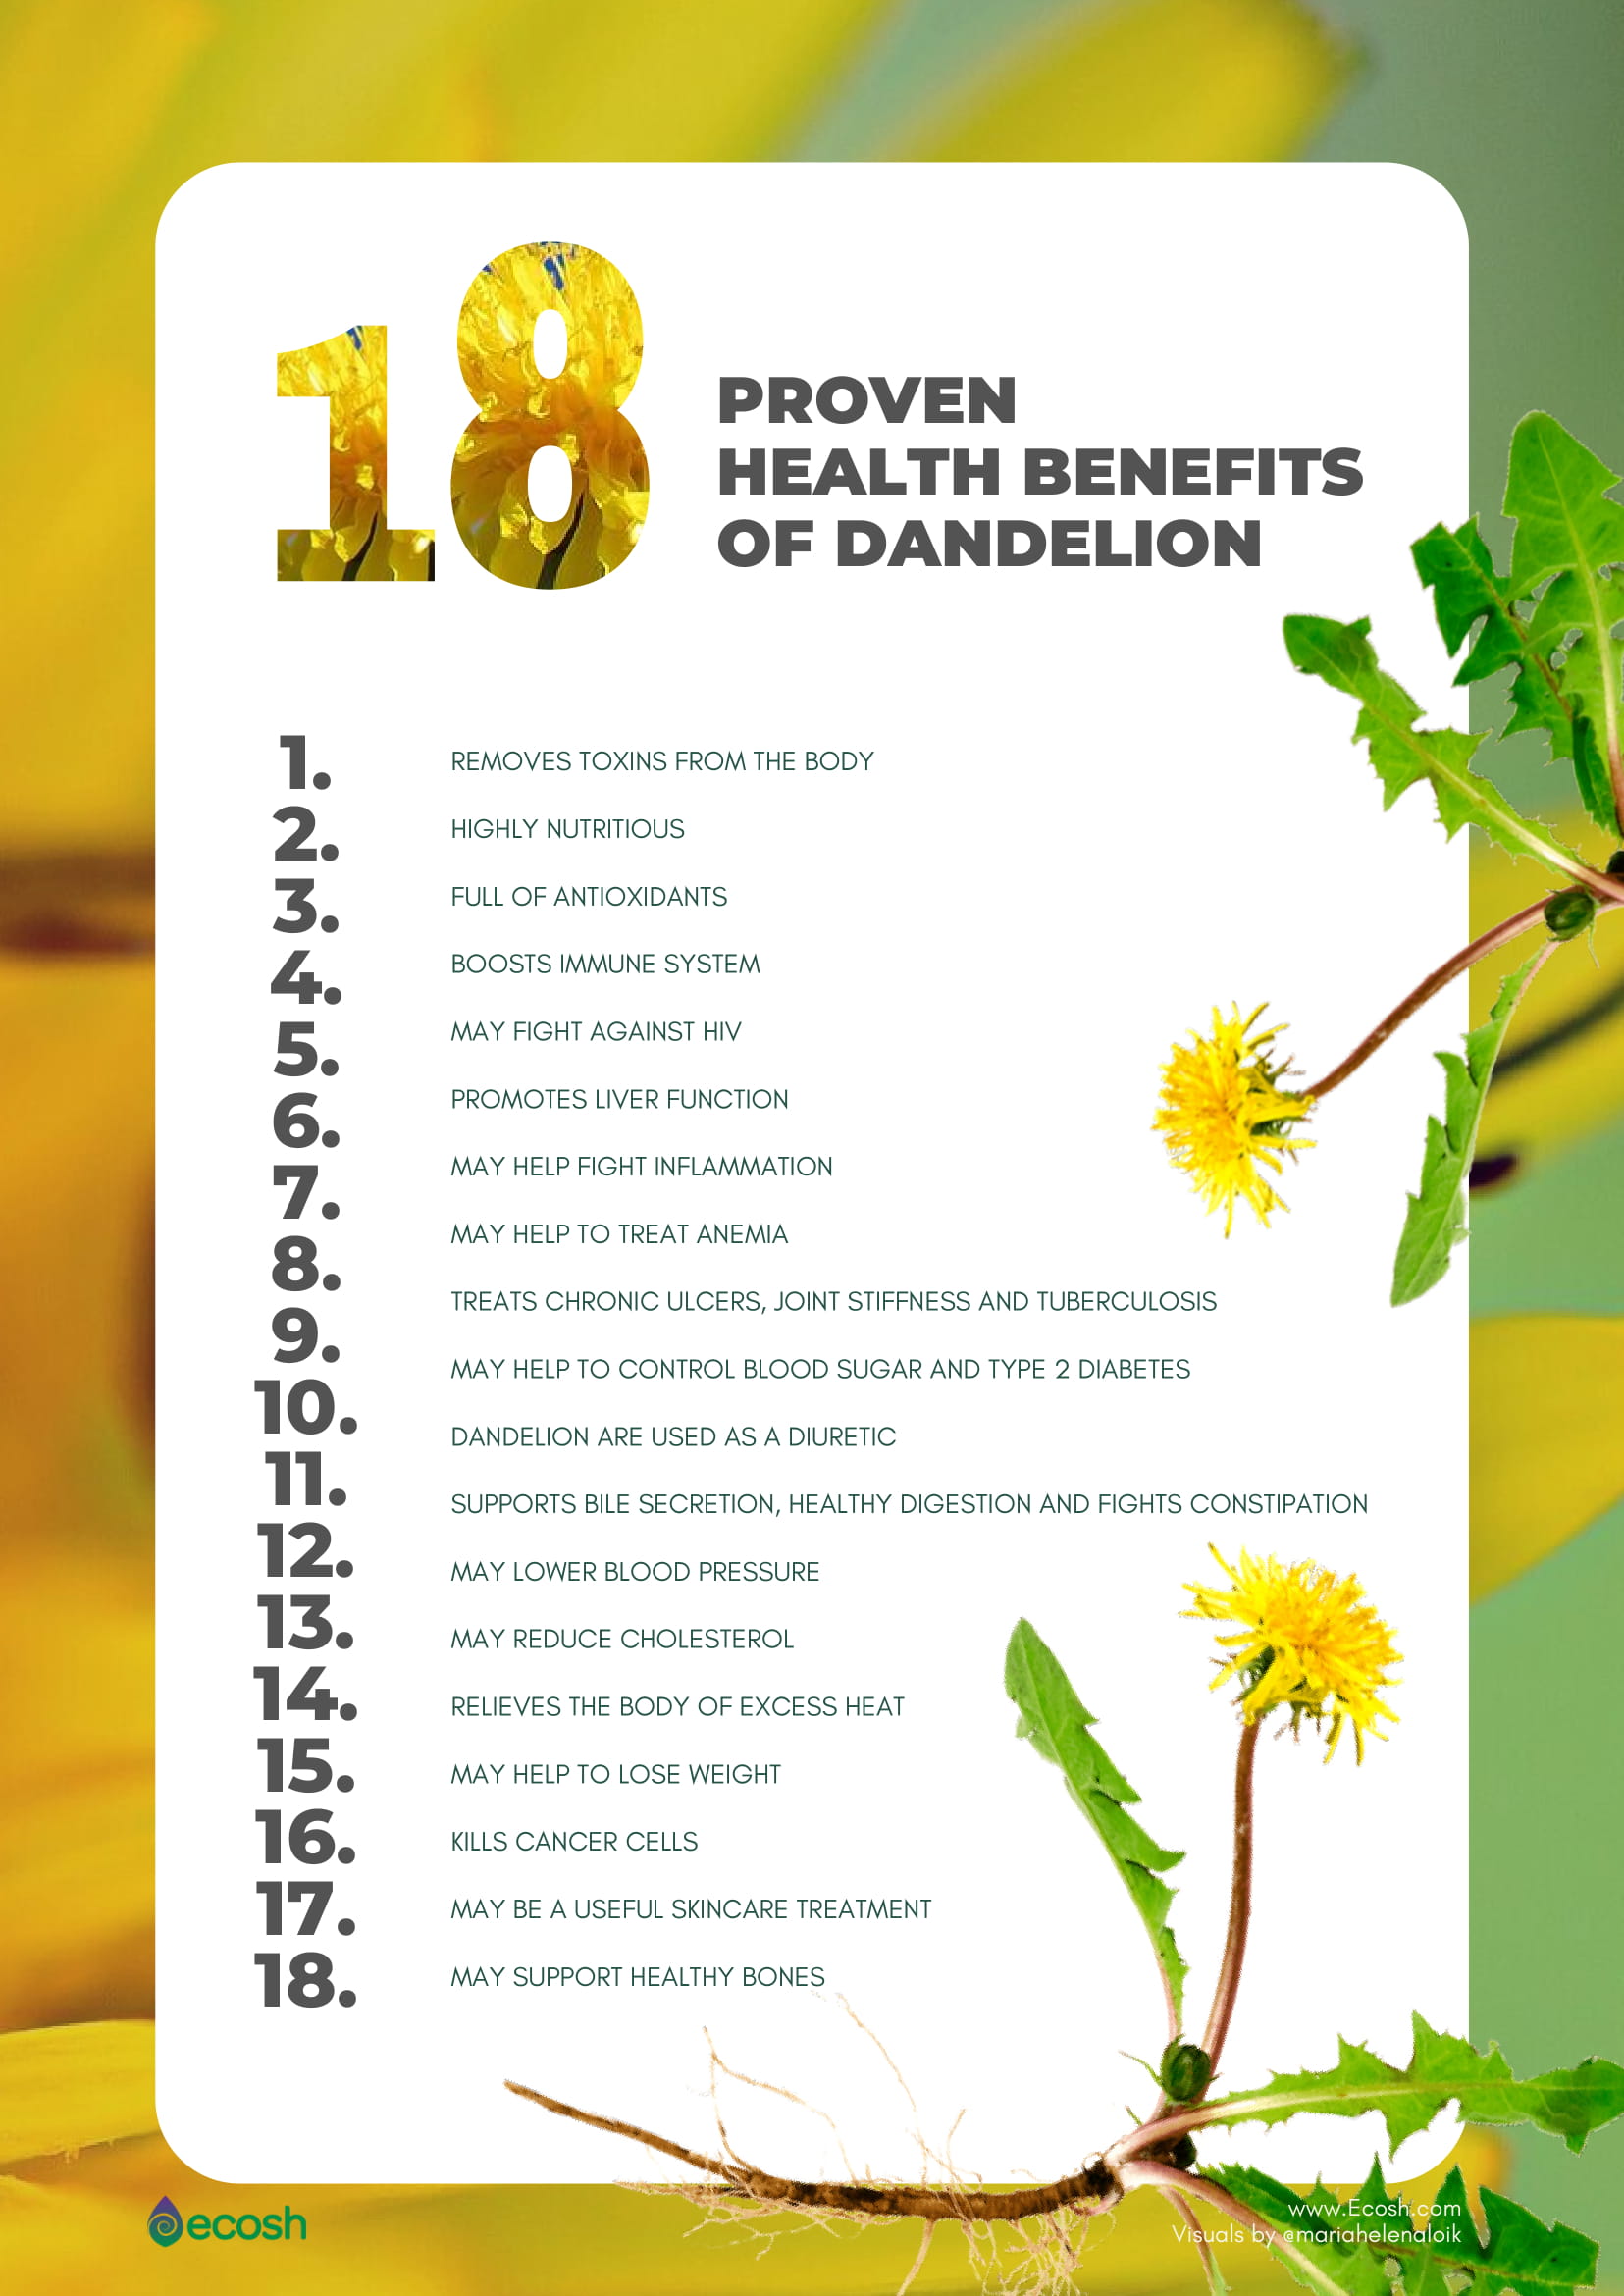 18 Proven Health Benefits of Dandelion